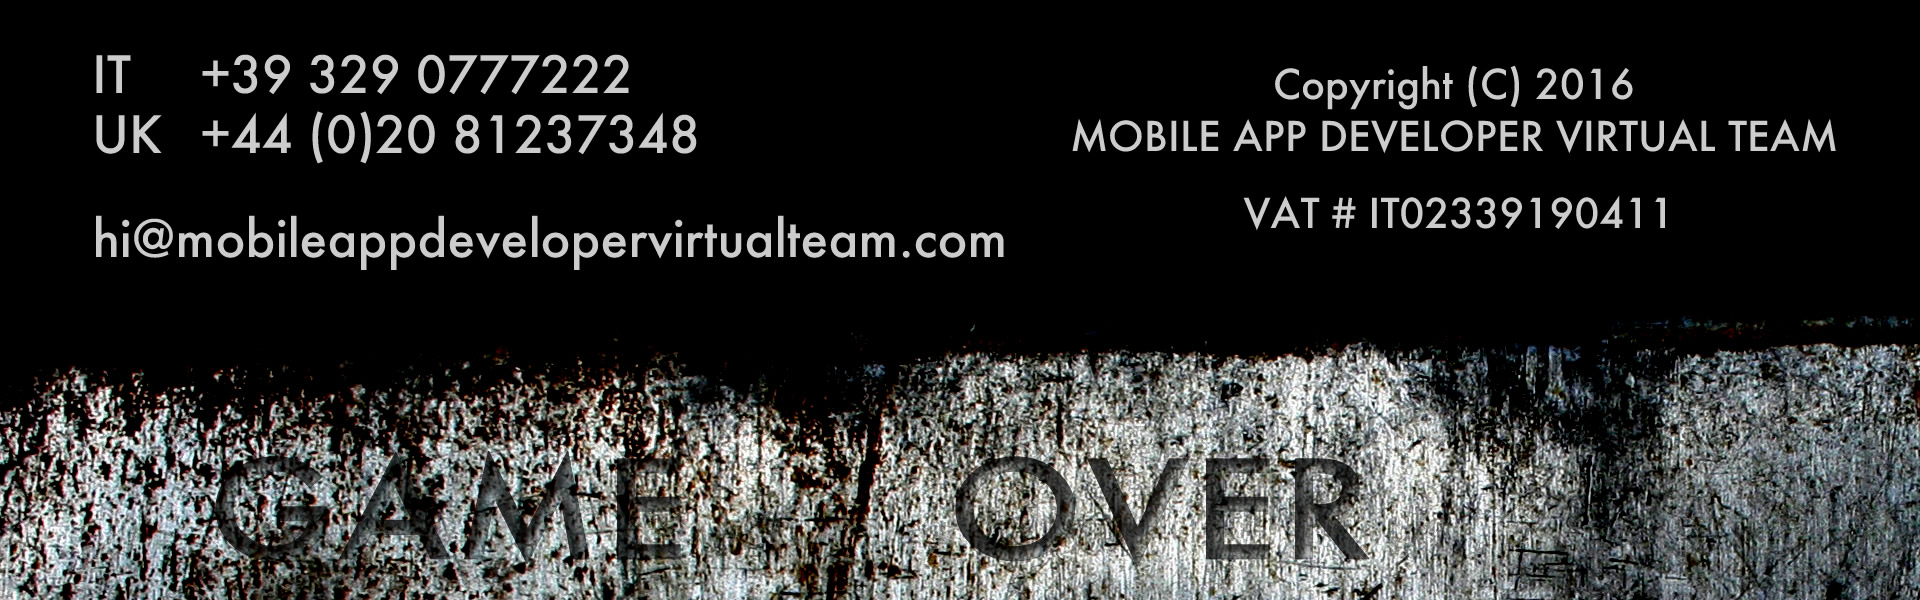 IT	+39 329 0777222 UK +44 (0)20 81237348  VAT IT02339190411  hi@mobileappdevelopervirtualteam.com MOBILE APP DEVELOPER VIRTUAL TEAM